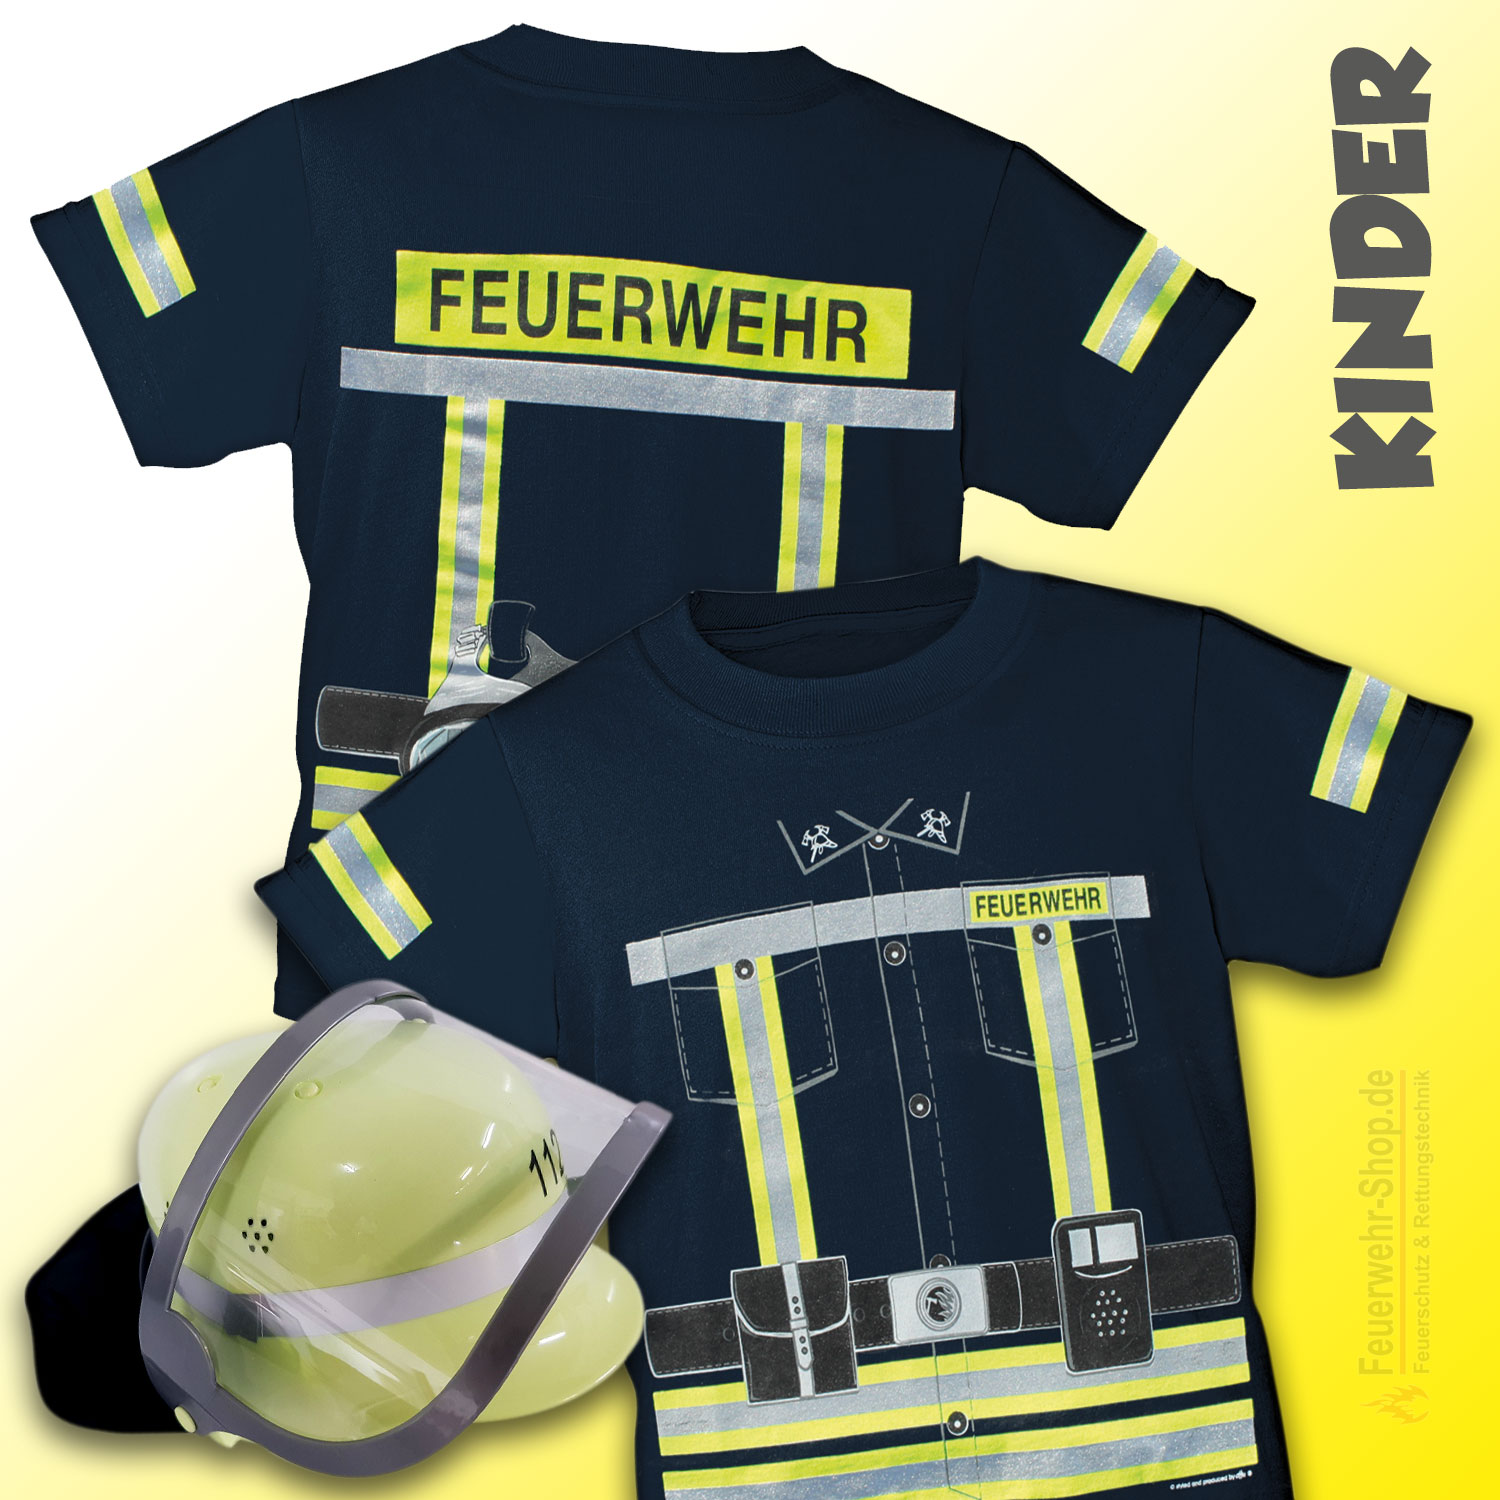 T-Shirt Feuerwehr beidseitig bedruckt neongelb FFW Premium FW40